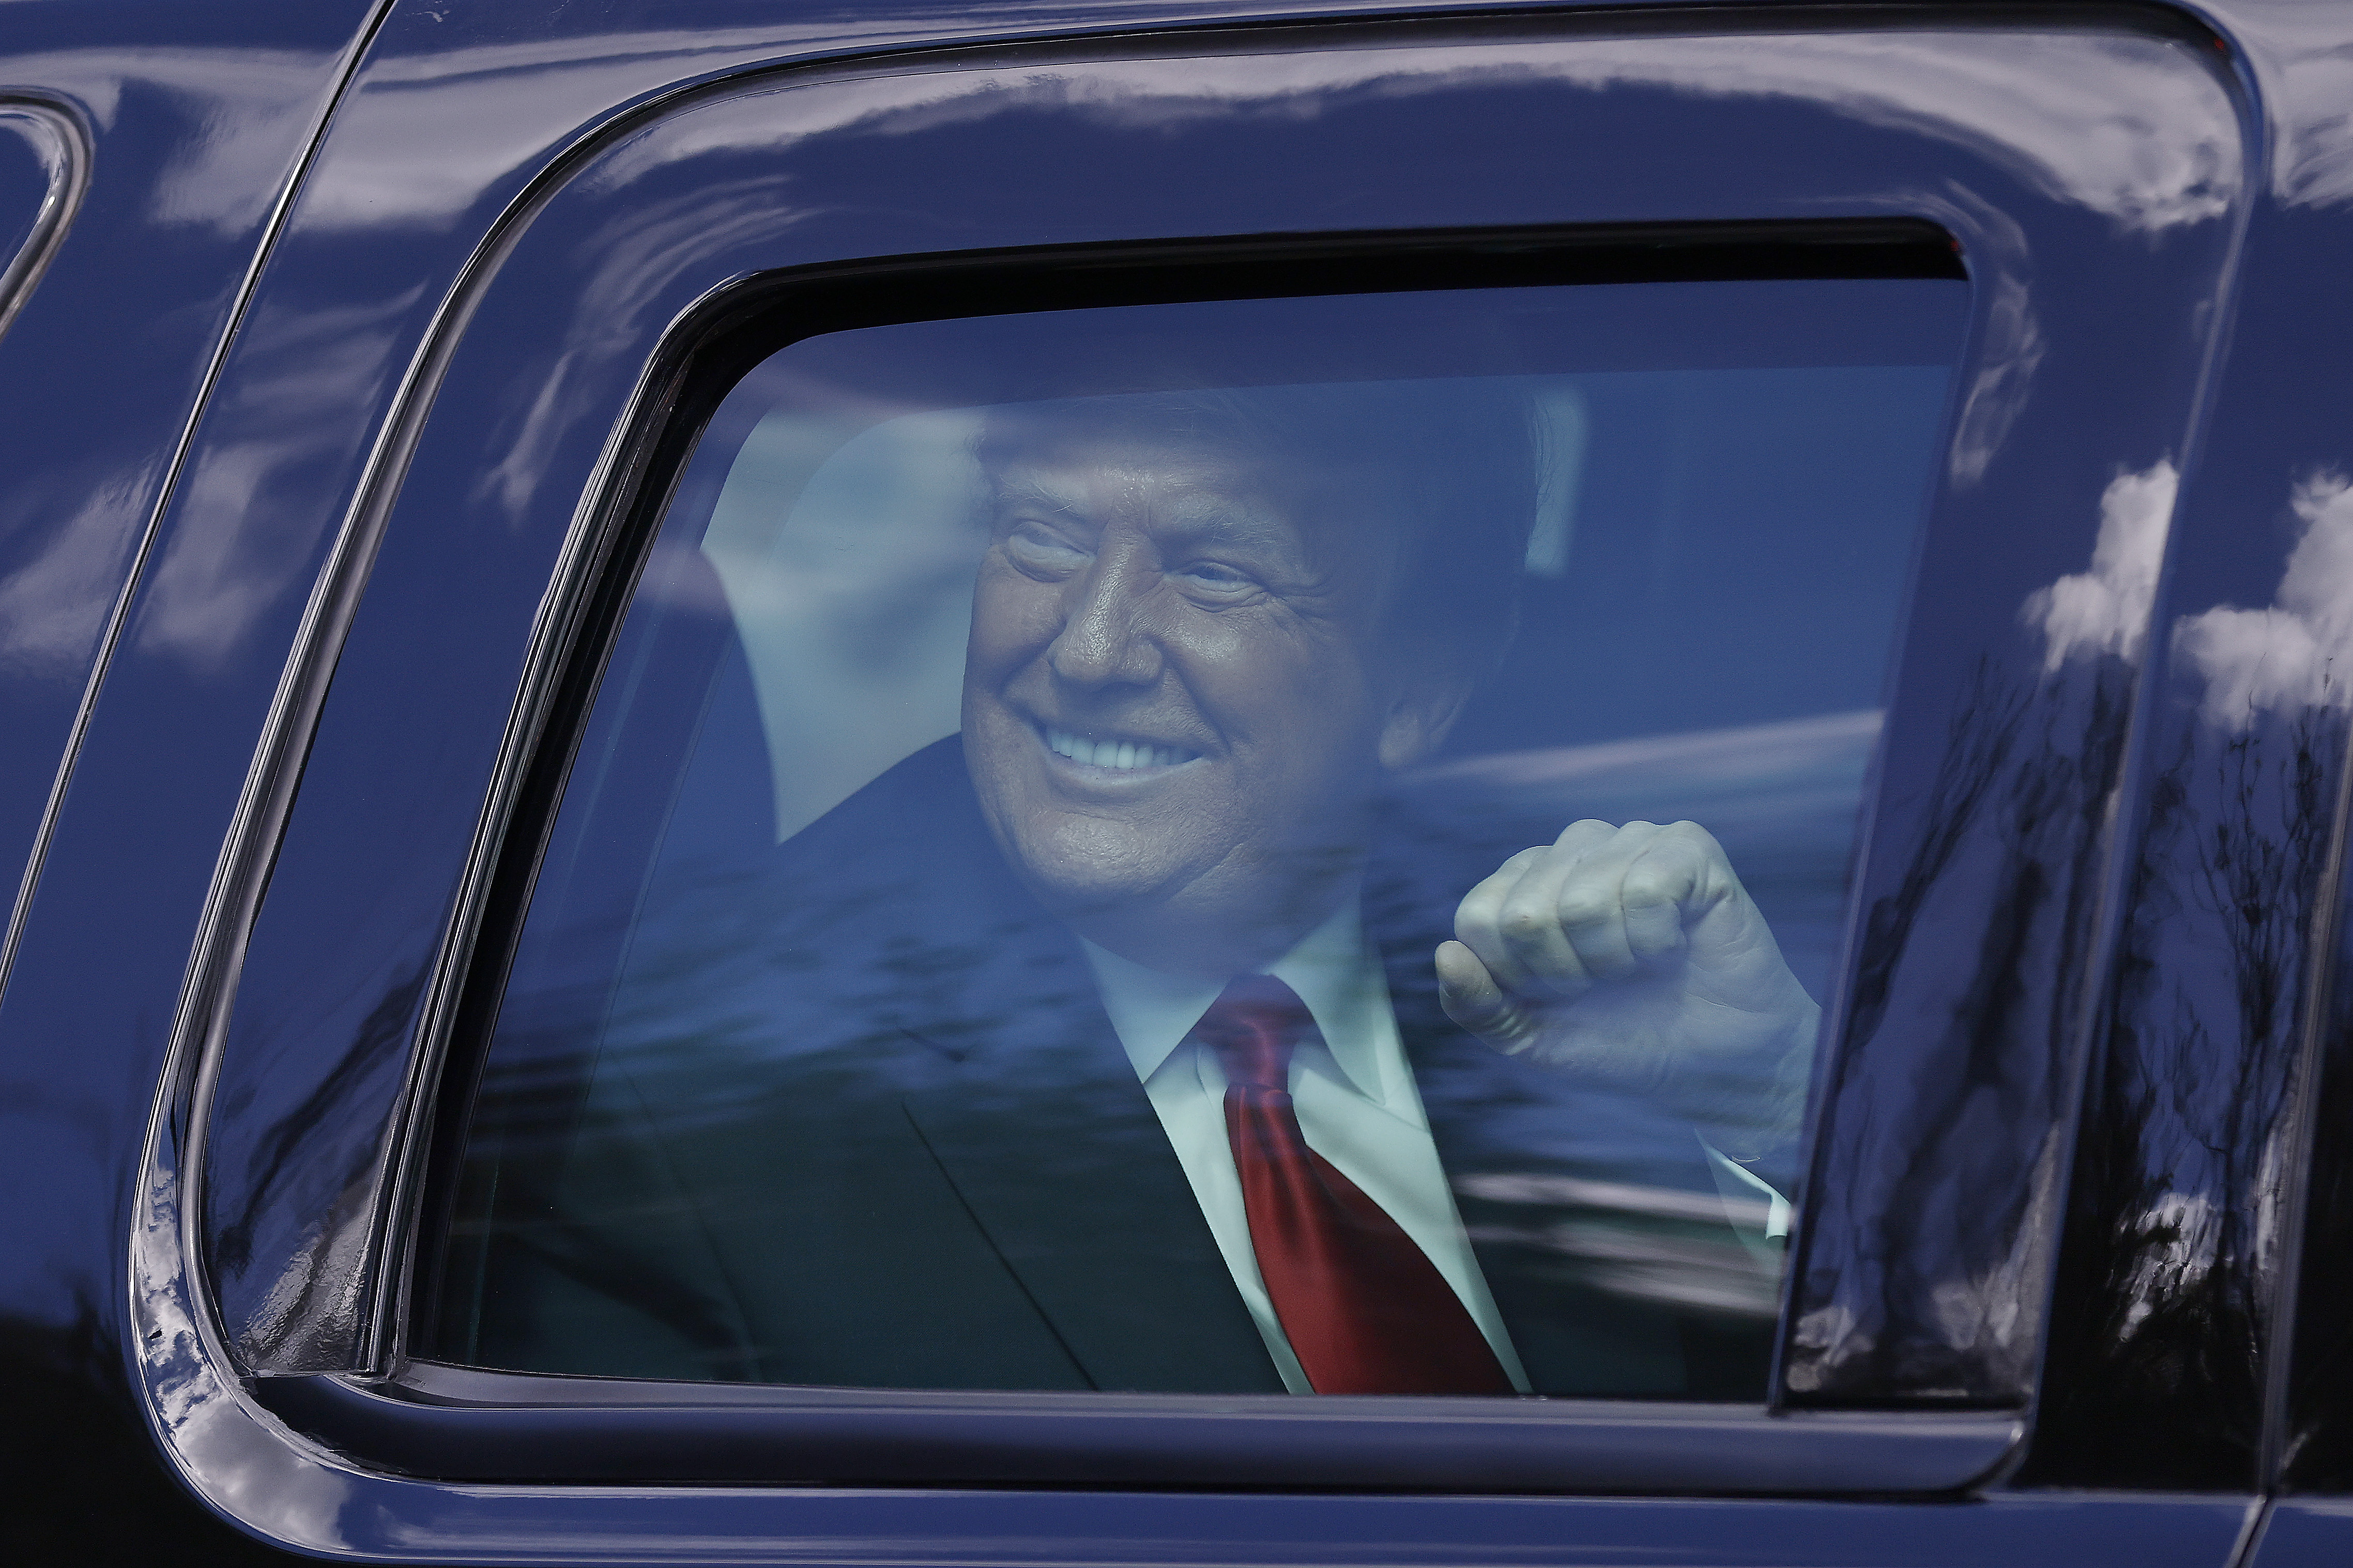 Donald Trump viaja a Mar-a-Lago en dia de investidura de Joe Biden